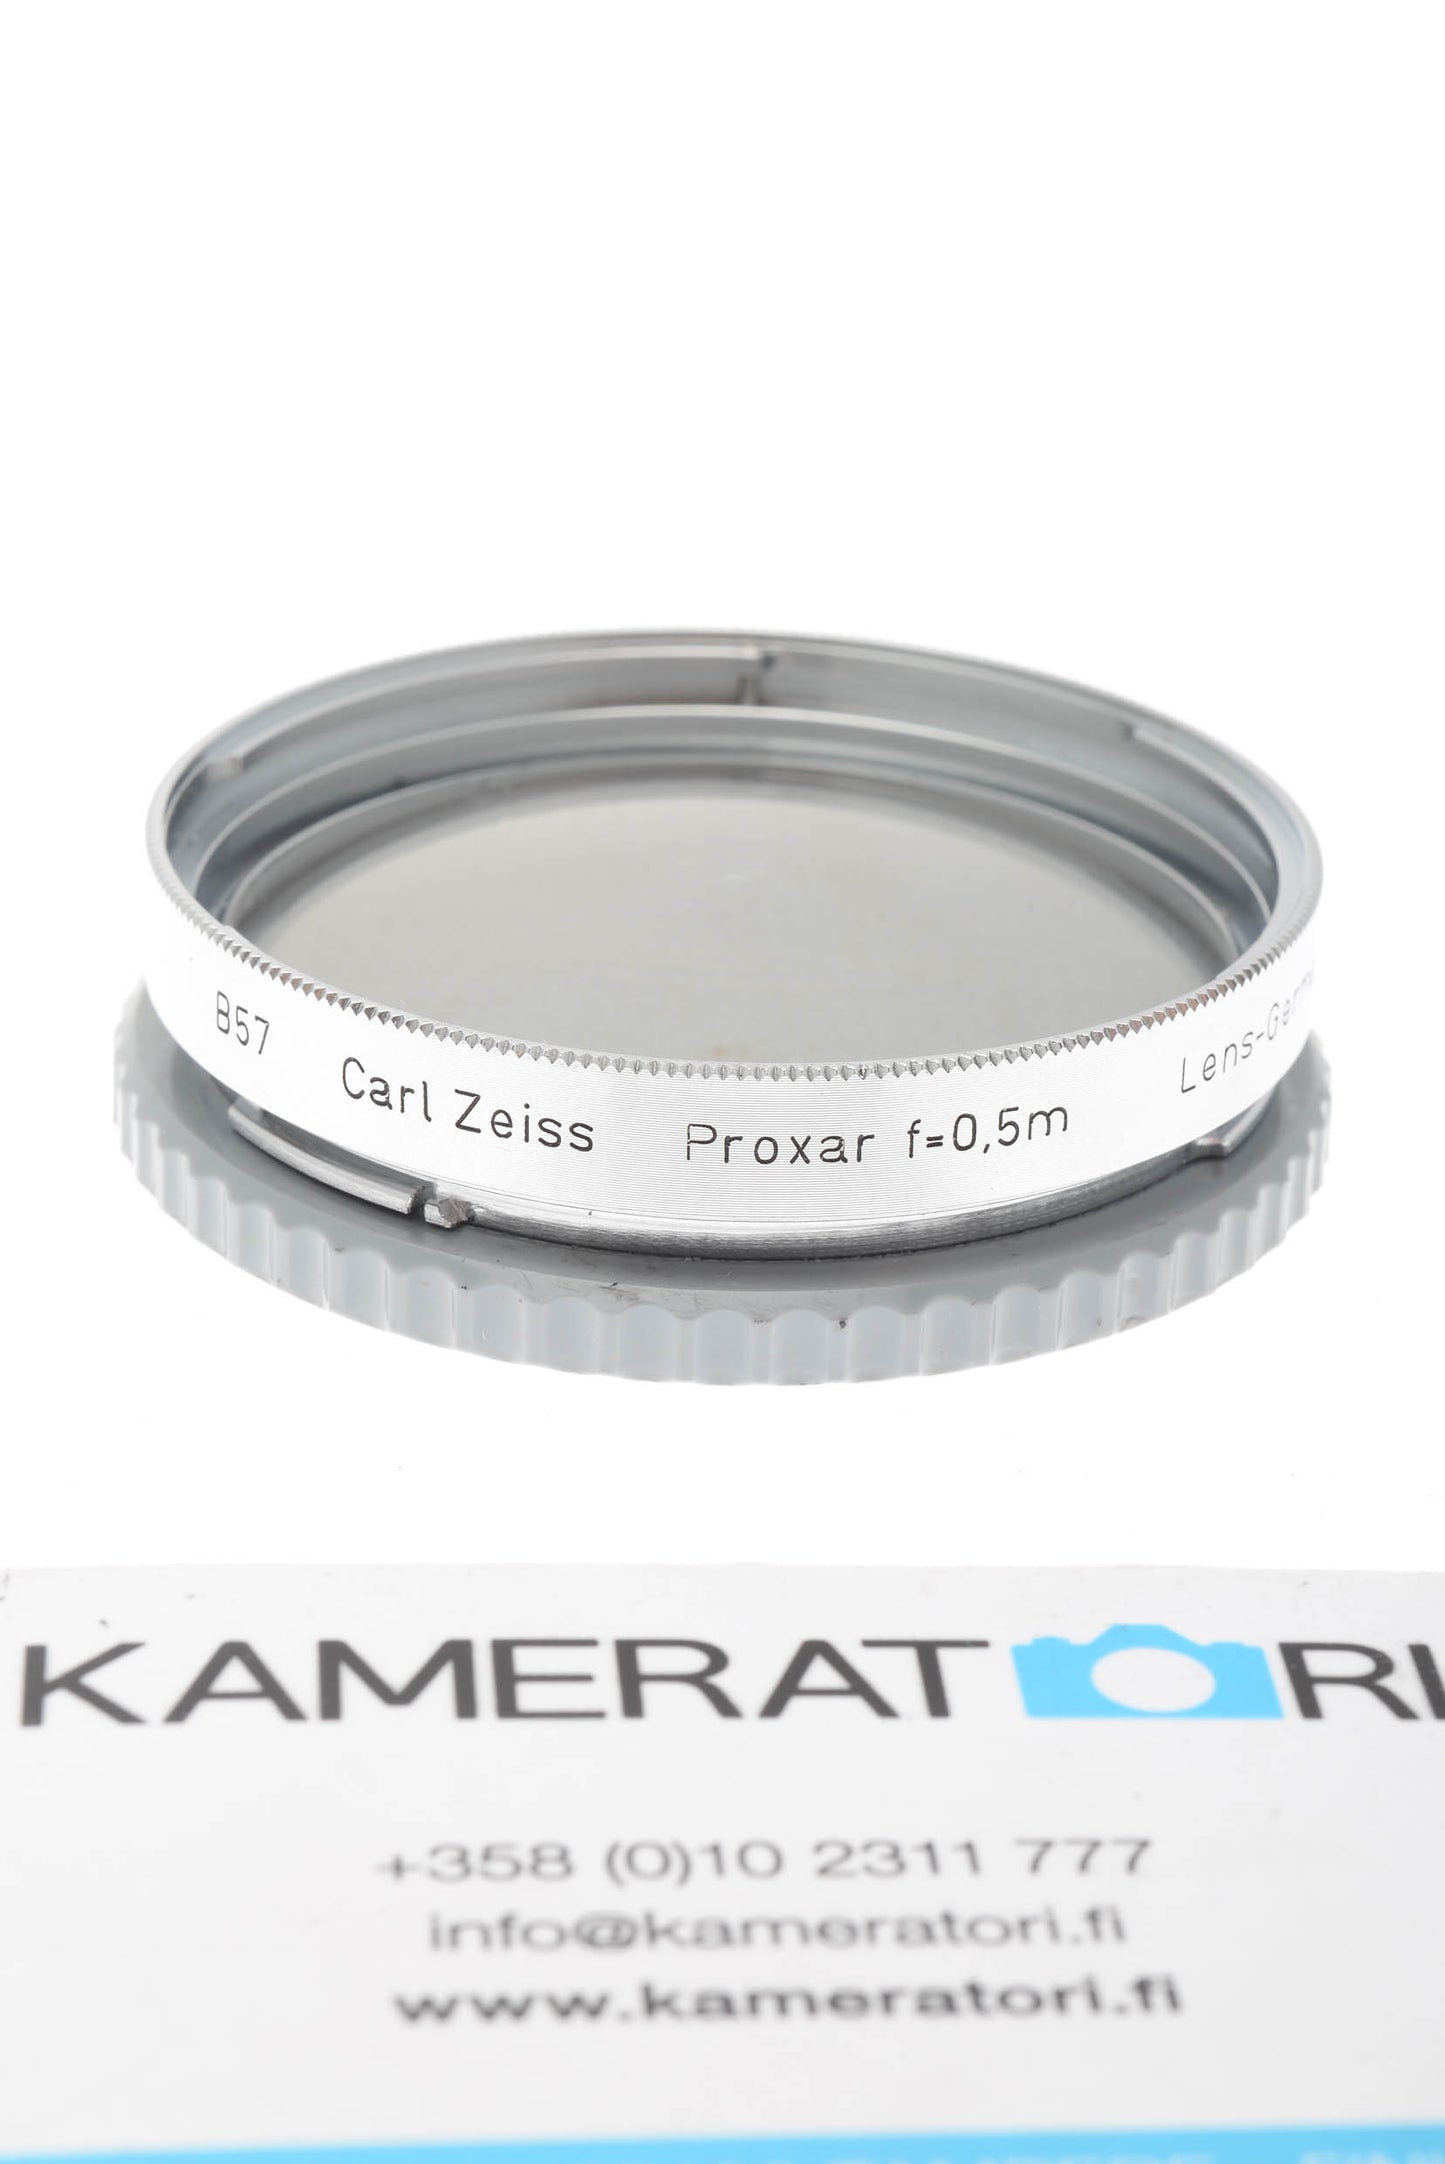 Hasselblad B57 Proxar f=0,5m Carl Zeiss filter